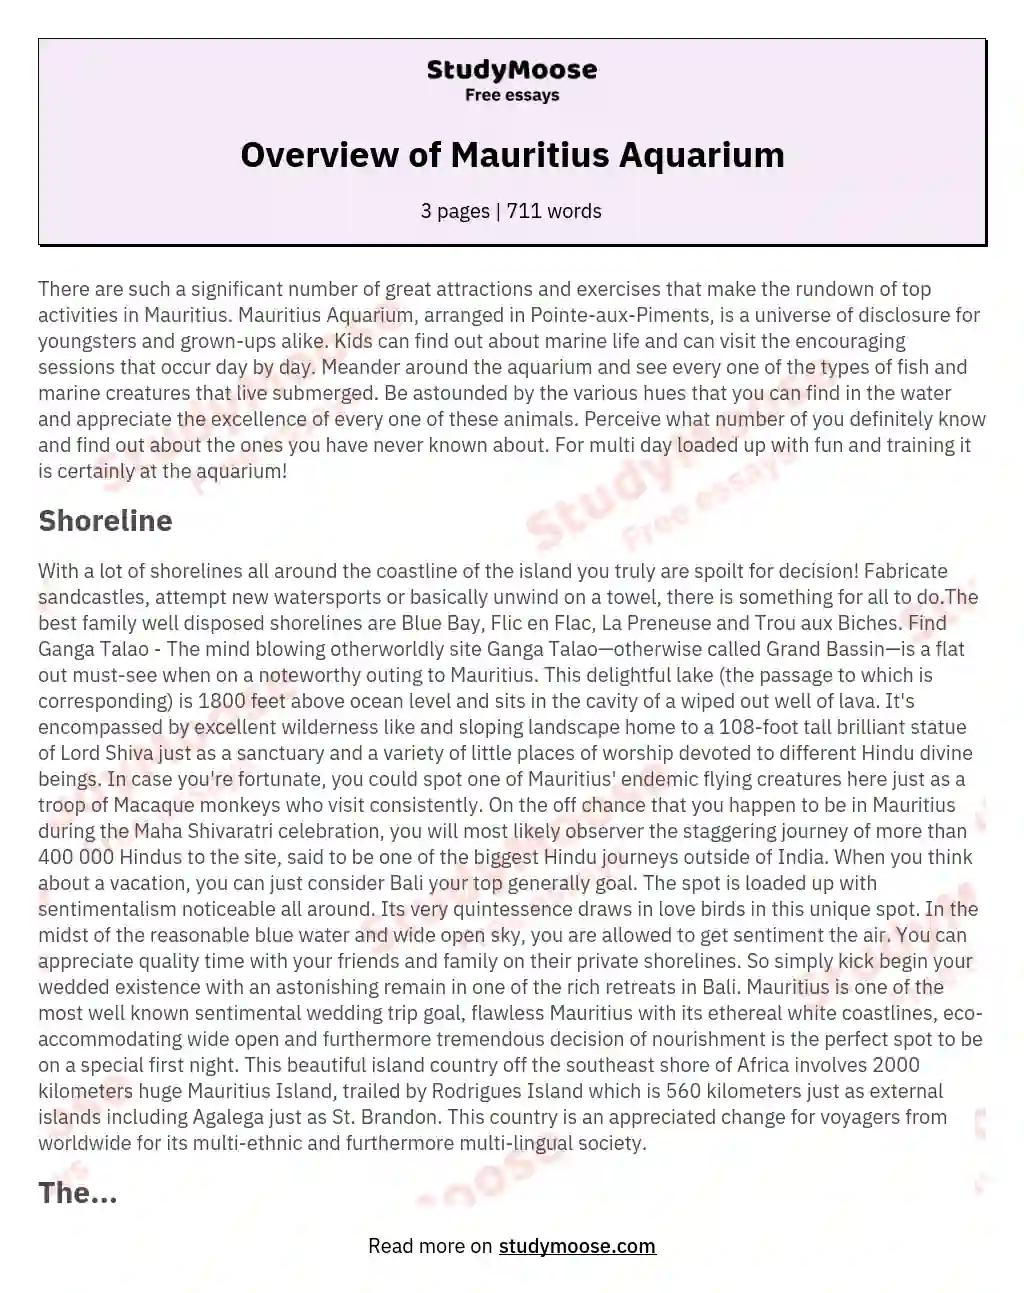 Overview of Mauritius Aquarium essay